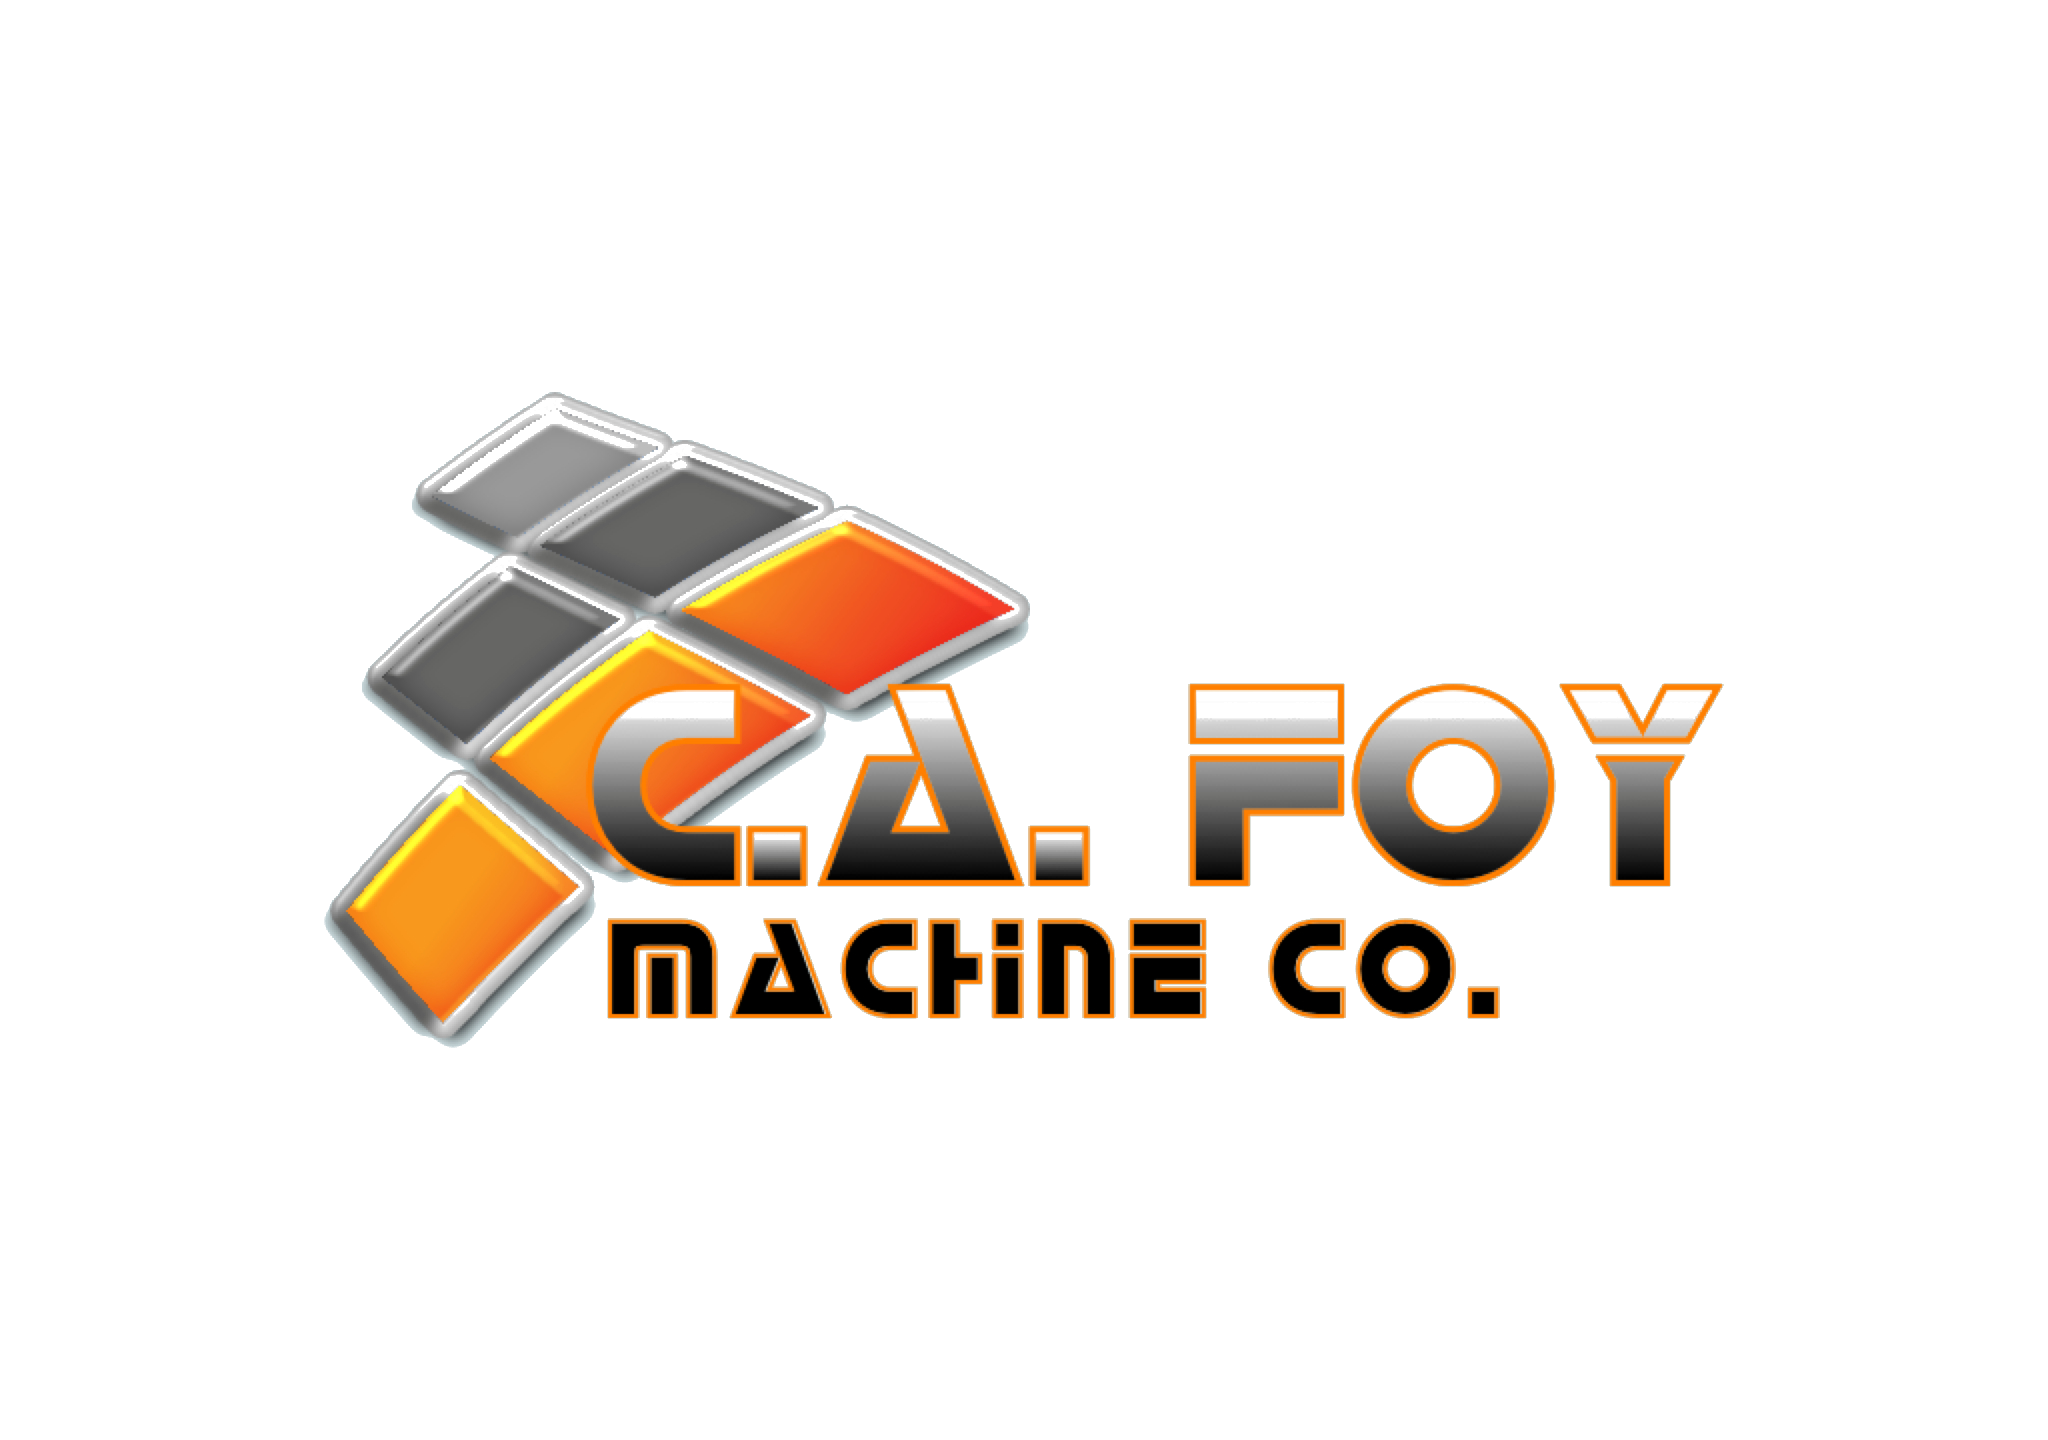 C.A. Foy Machine